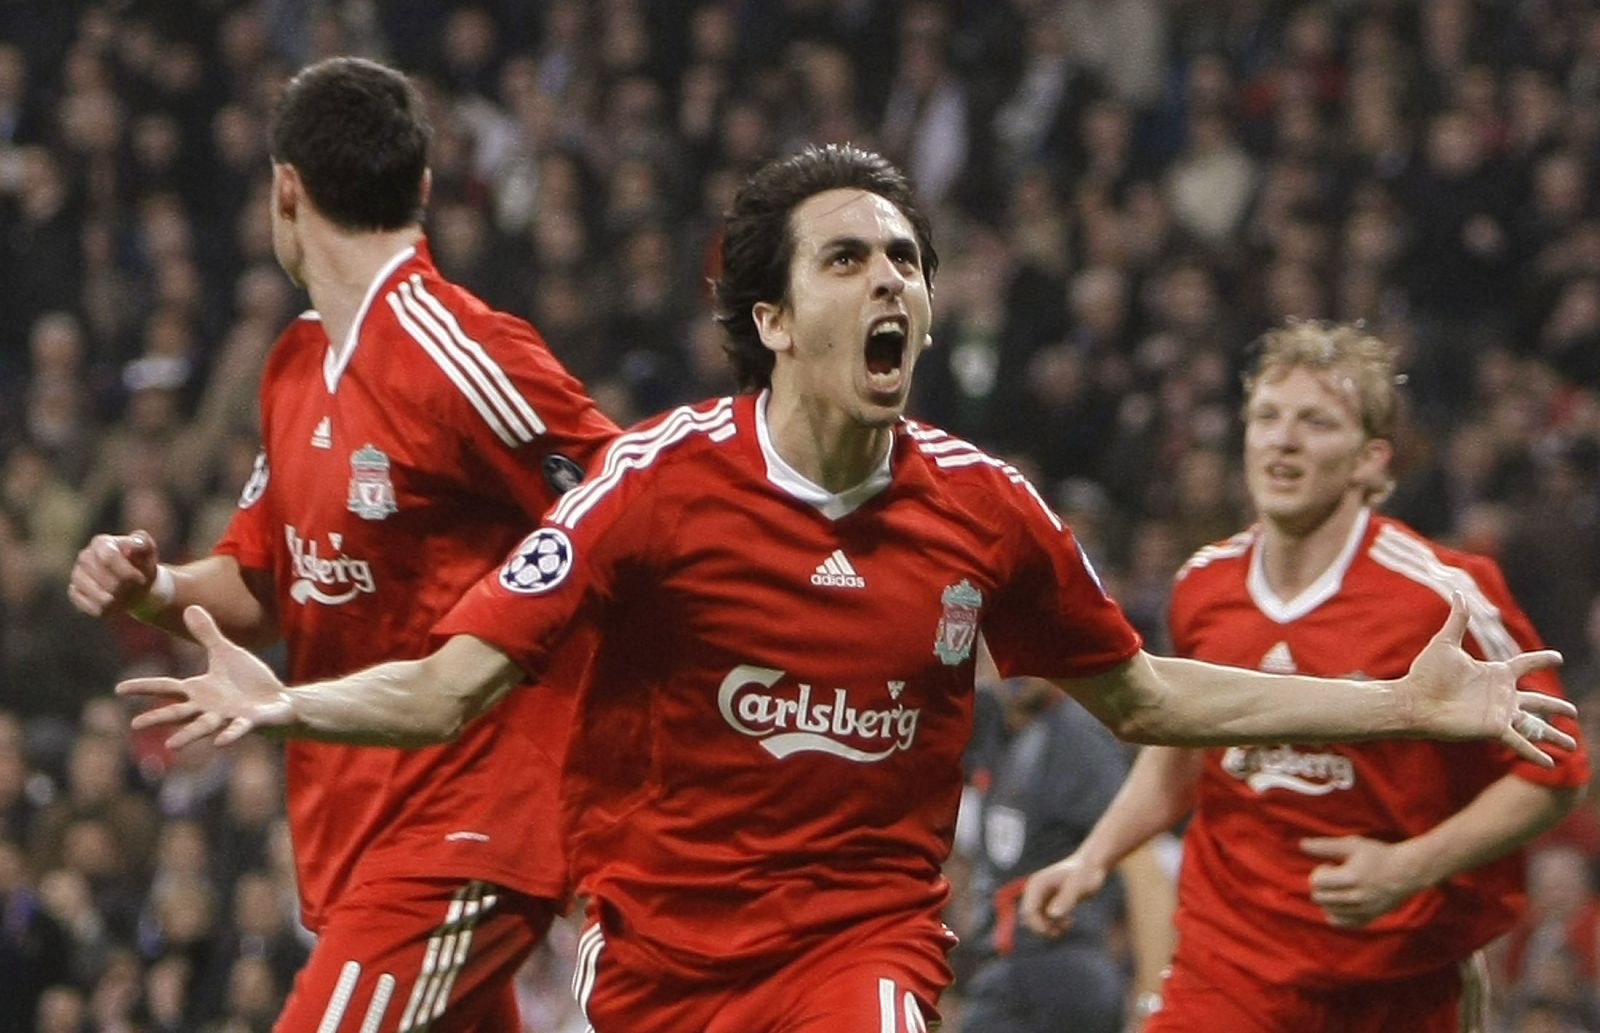 El jugador del Liverpool Benayoun celebra el gol marcado al Real Madrid en Liga de Campeones.